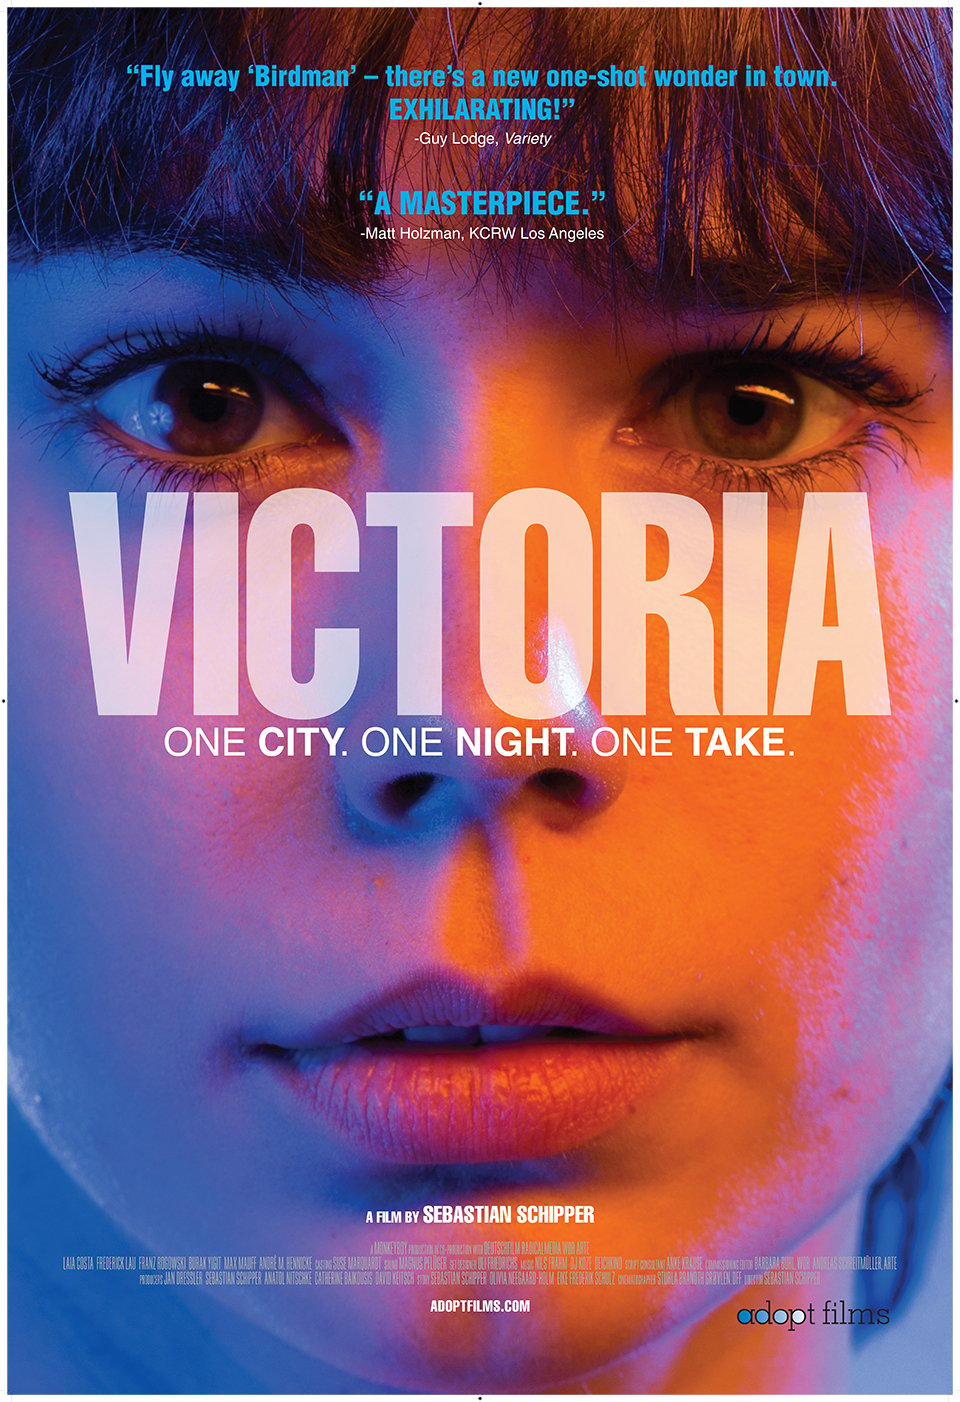 Victoria (Trailer)